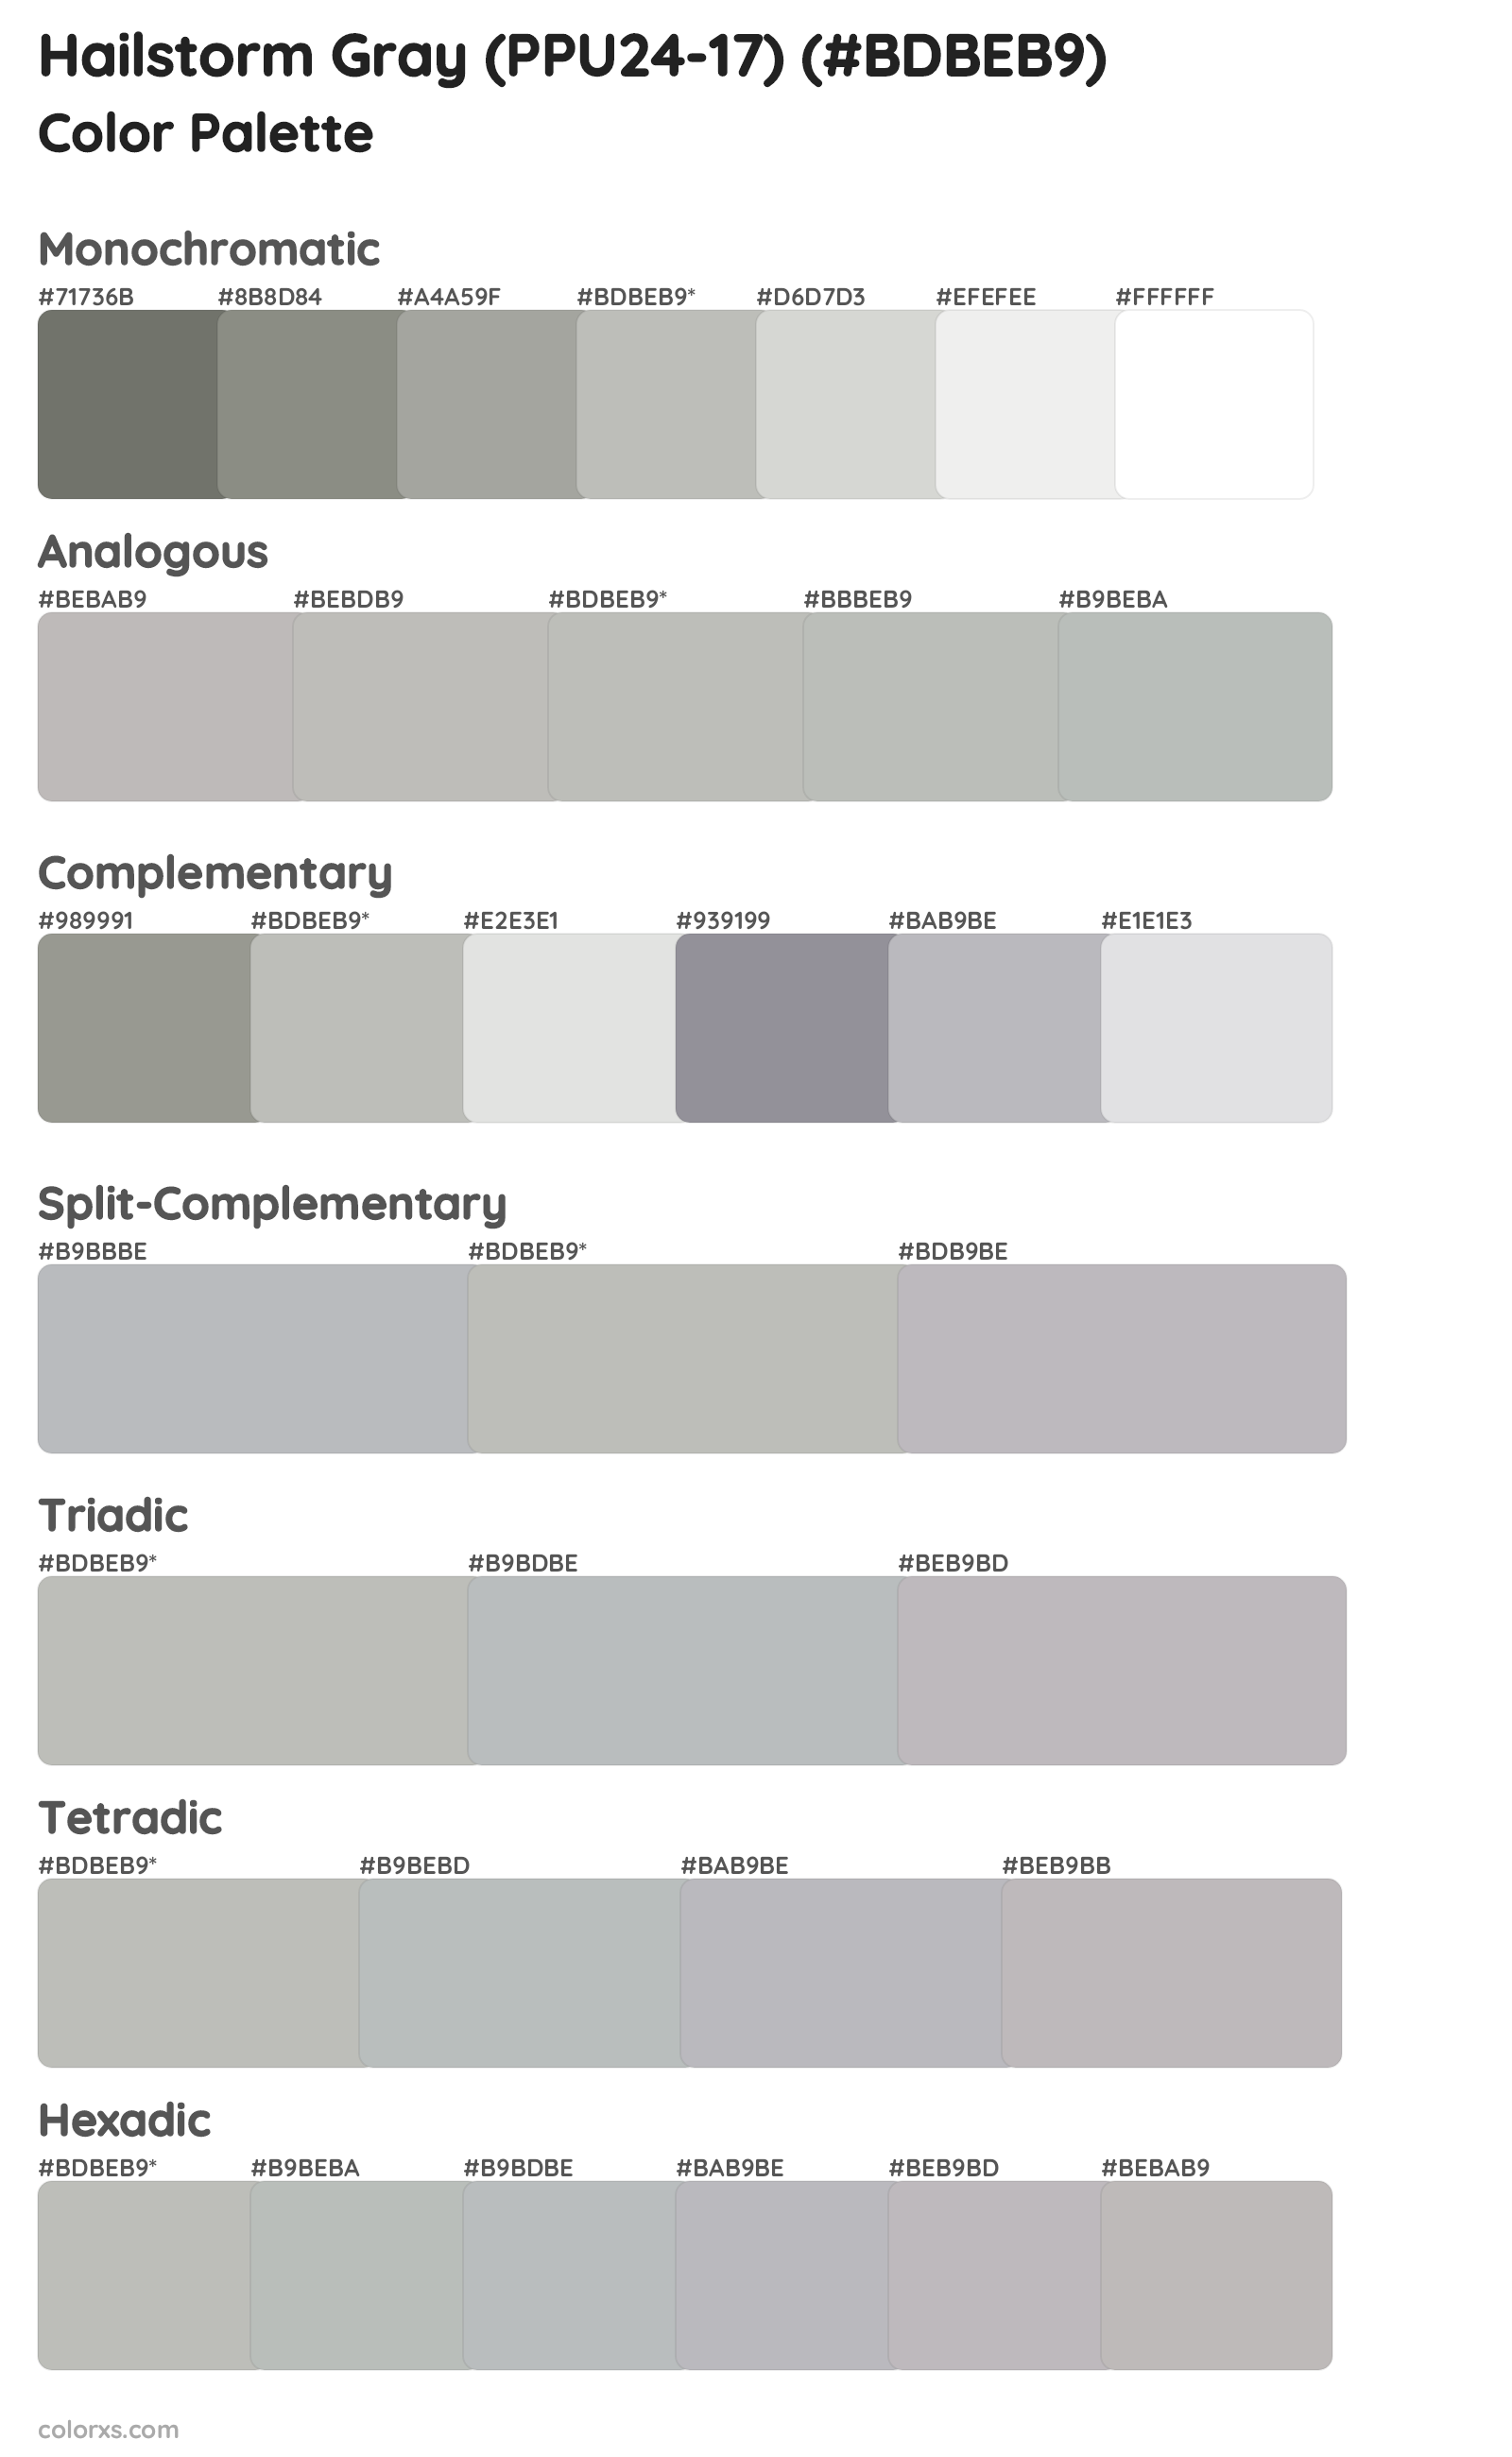 Hailstorm Gray (PPU24-17) Color Scheme Palettes